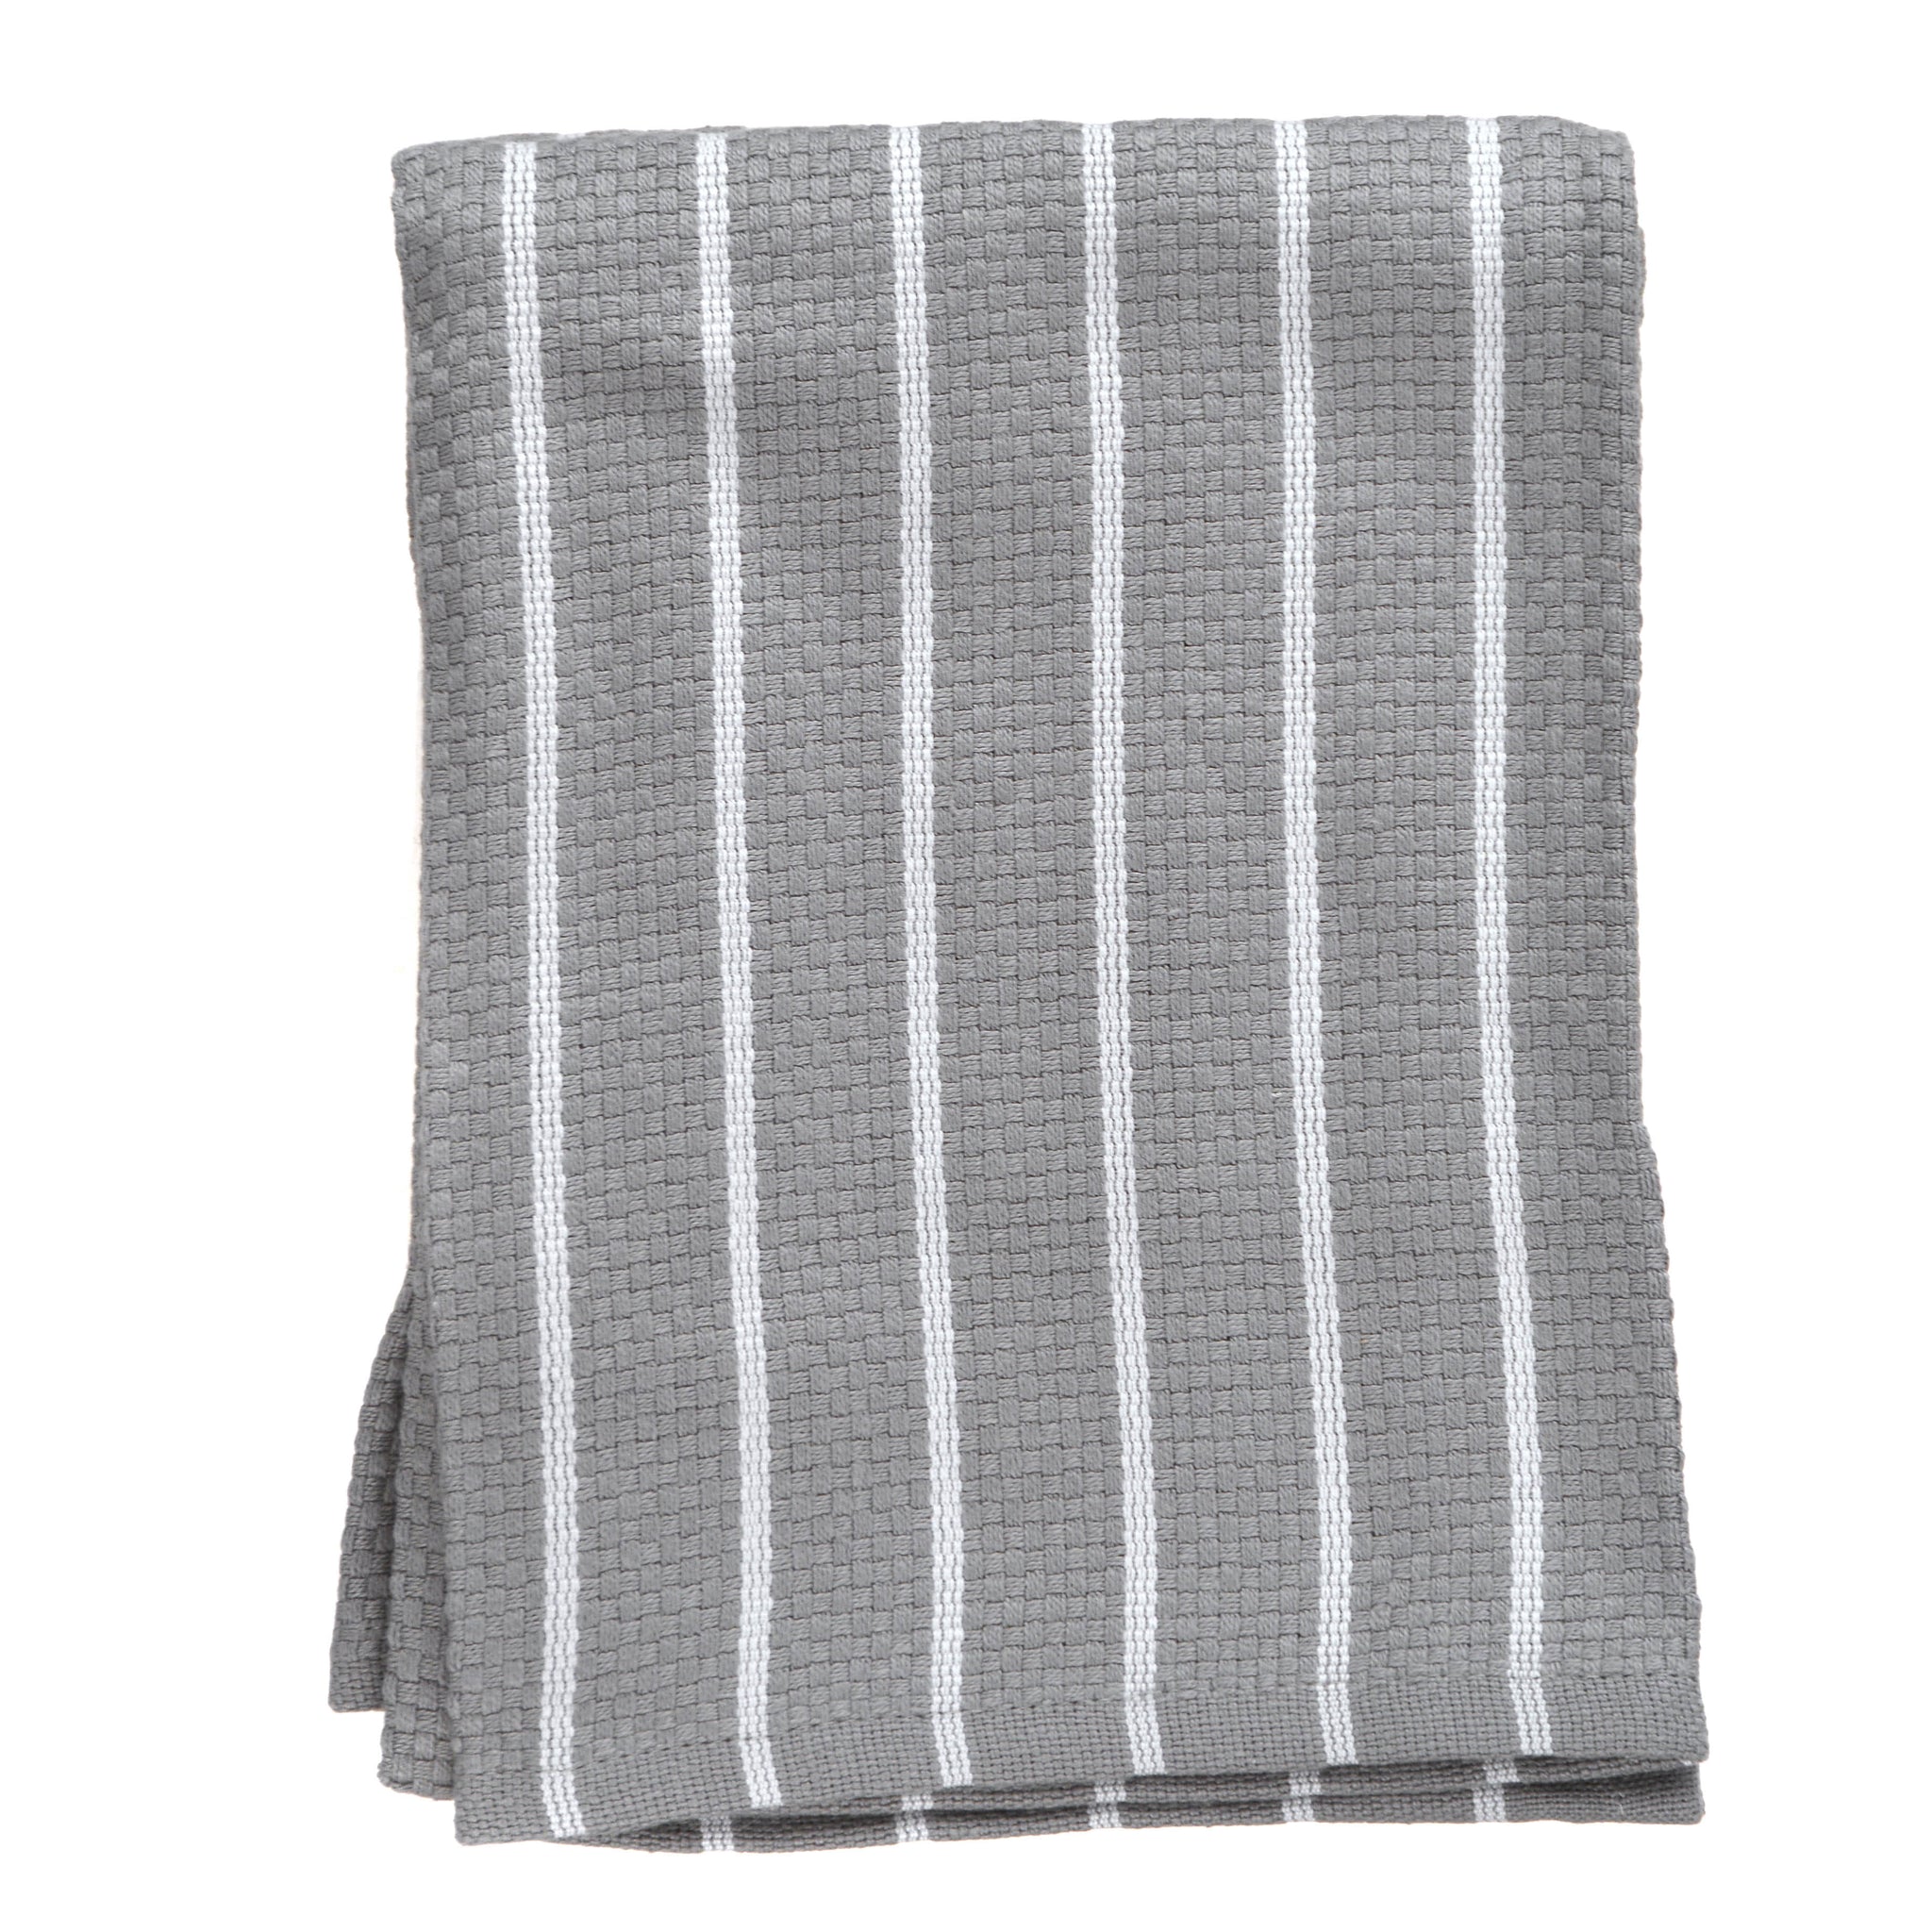 Tea Towels | Buy Tea Towels Online, Cotton Tea Towels